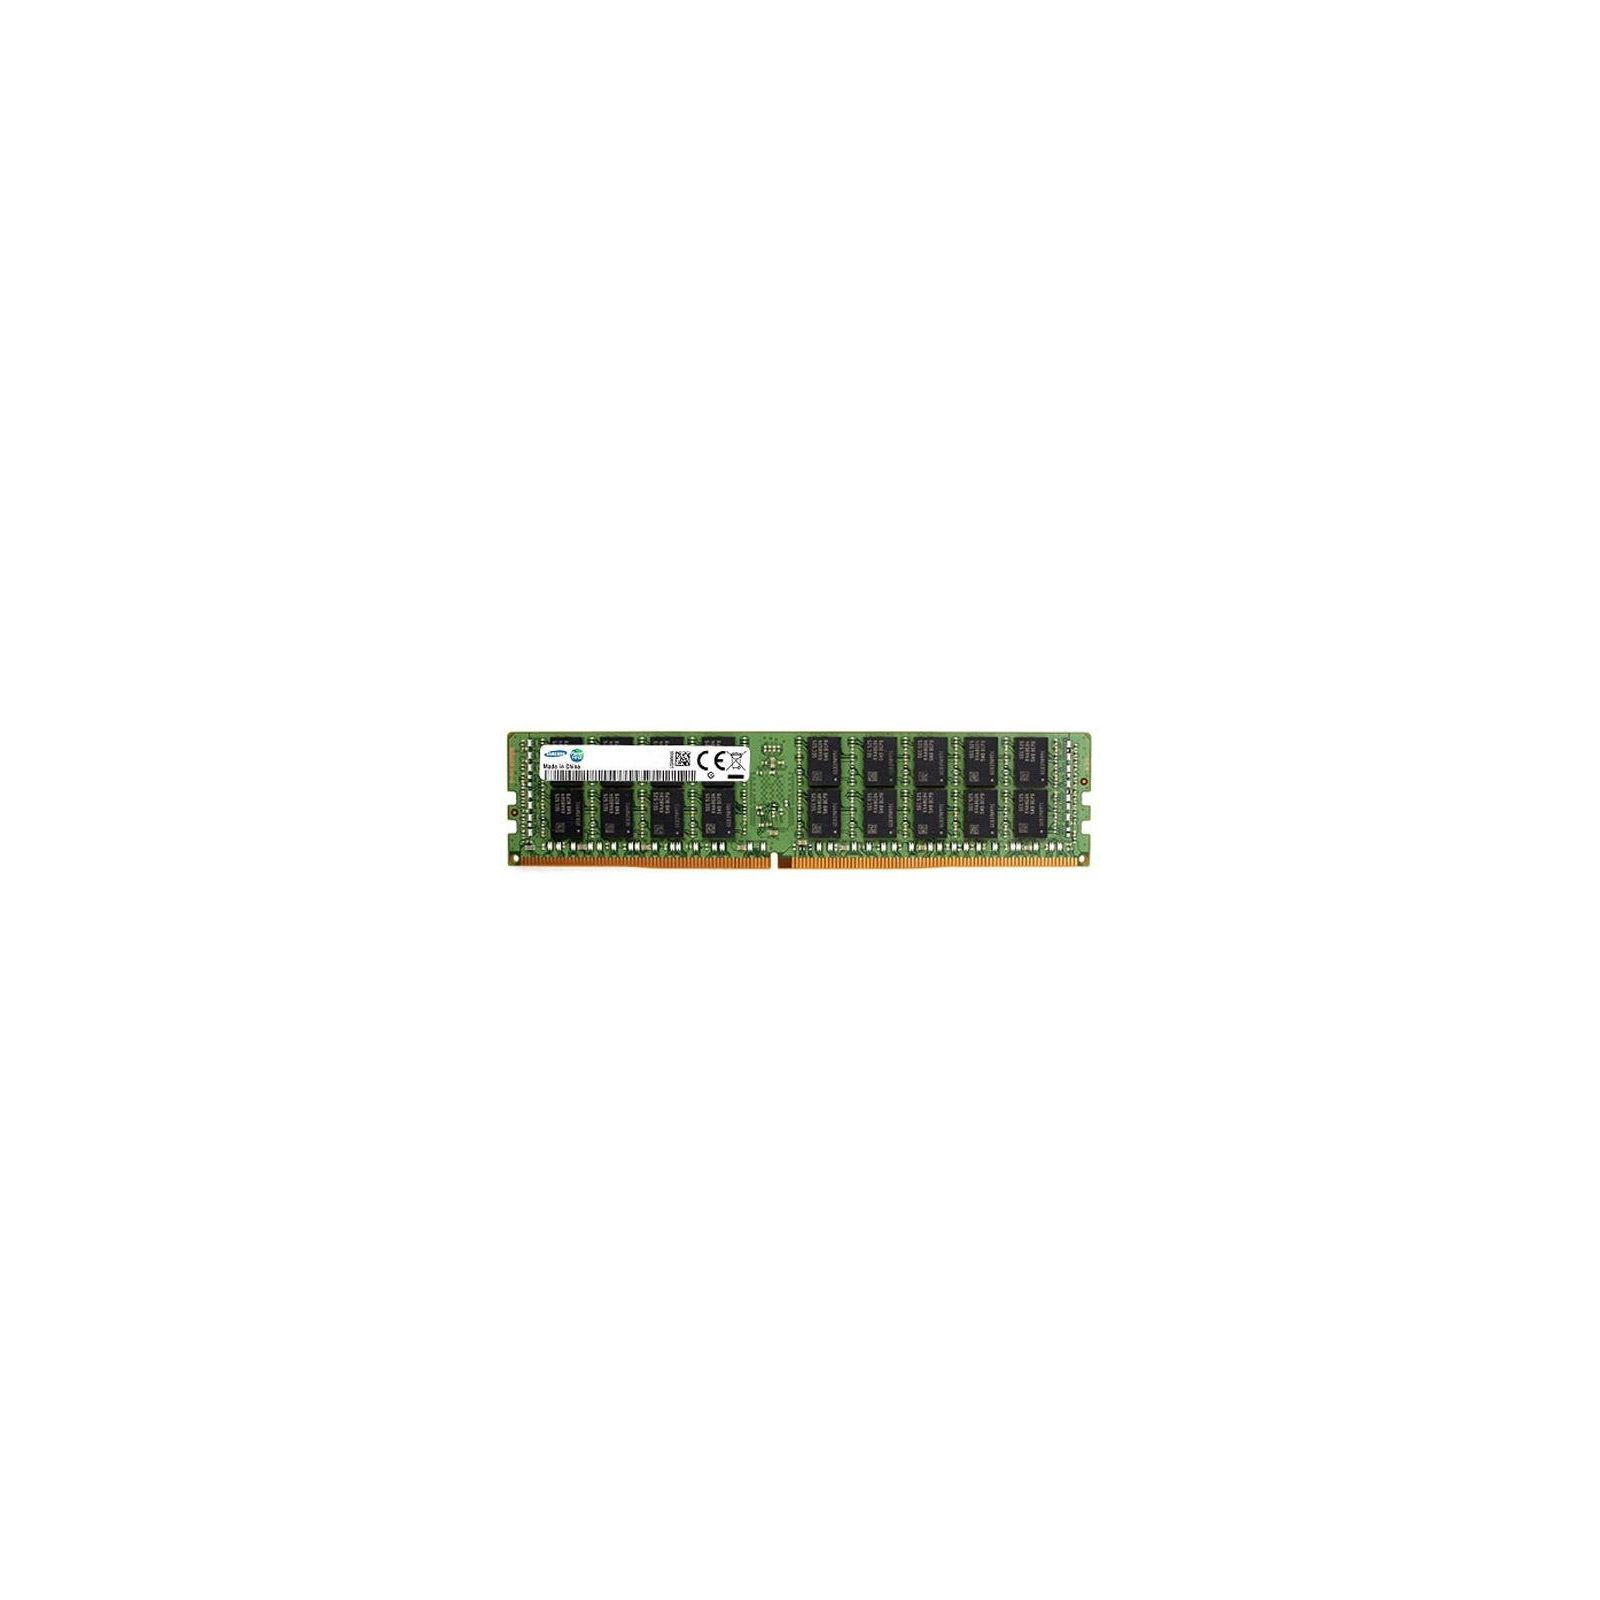 Модуль памяти для сервера DDR4 16GB ECC RDIMM 2400MHz 2Rx8 1.2V CL17 Samsung (M393A2K43CB1-CRC)